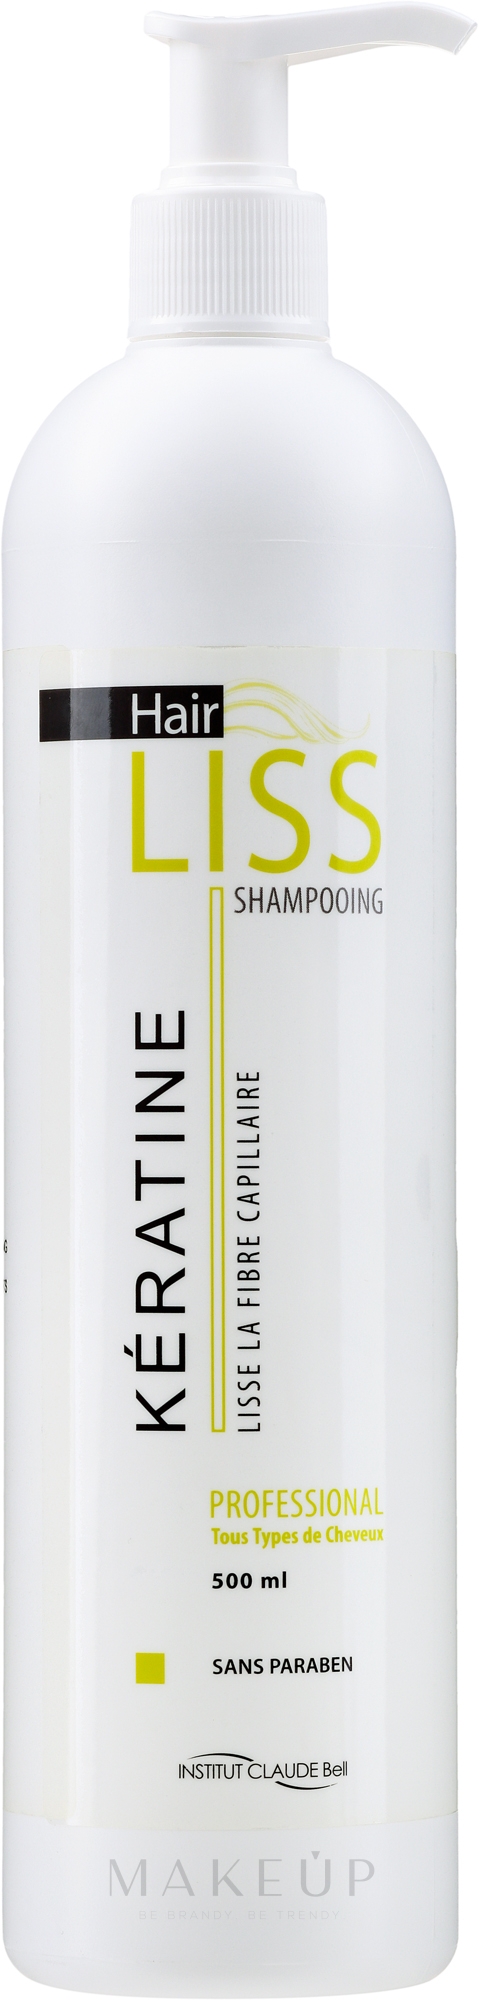 Glättendes und pflegendes Haarshampoo mit Keratin - Institut Claude Bell Hairliss Keratin Shampoo — Bild 500 ml